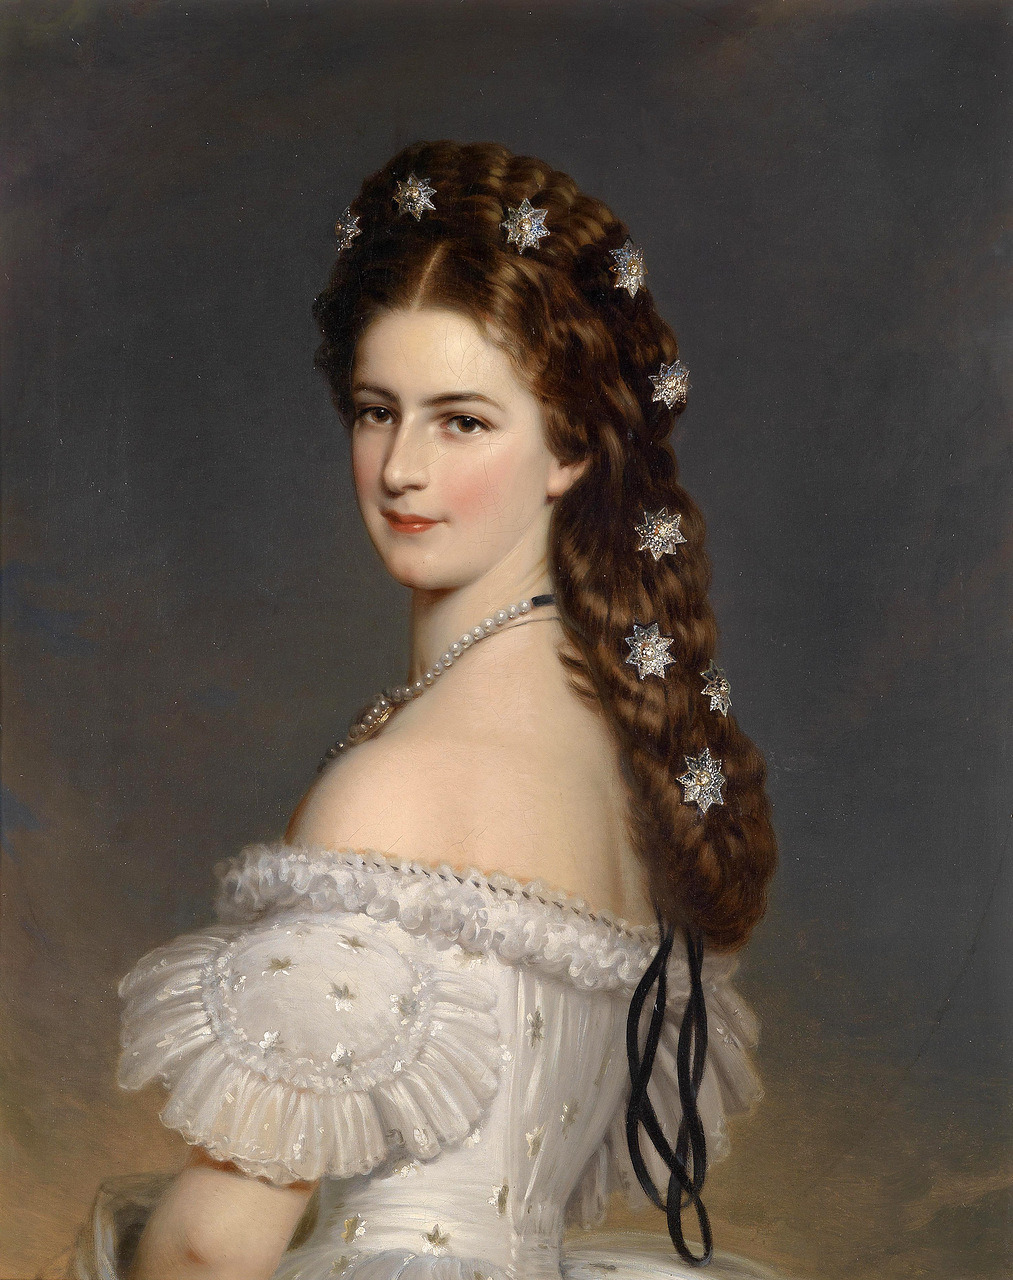 23silence:</p><br />
<p>Franz Xaver Winterhalter (1805-1873) - Kaiserin Elisabeth von Österreich, Porträt der Kaiserin mit Diamantsternen im Haar<br /><br />
